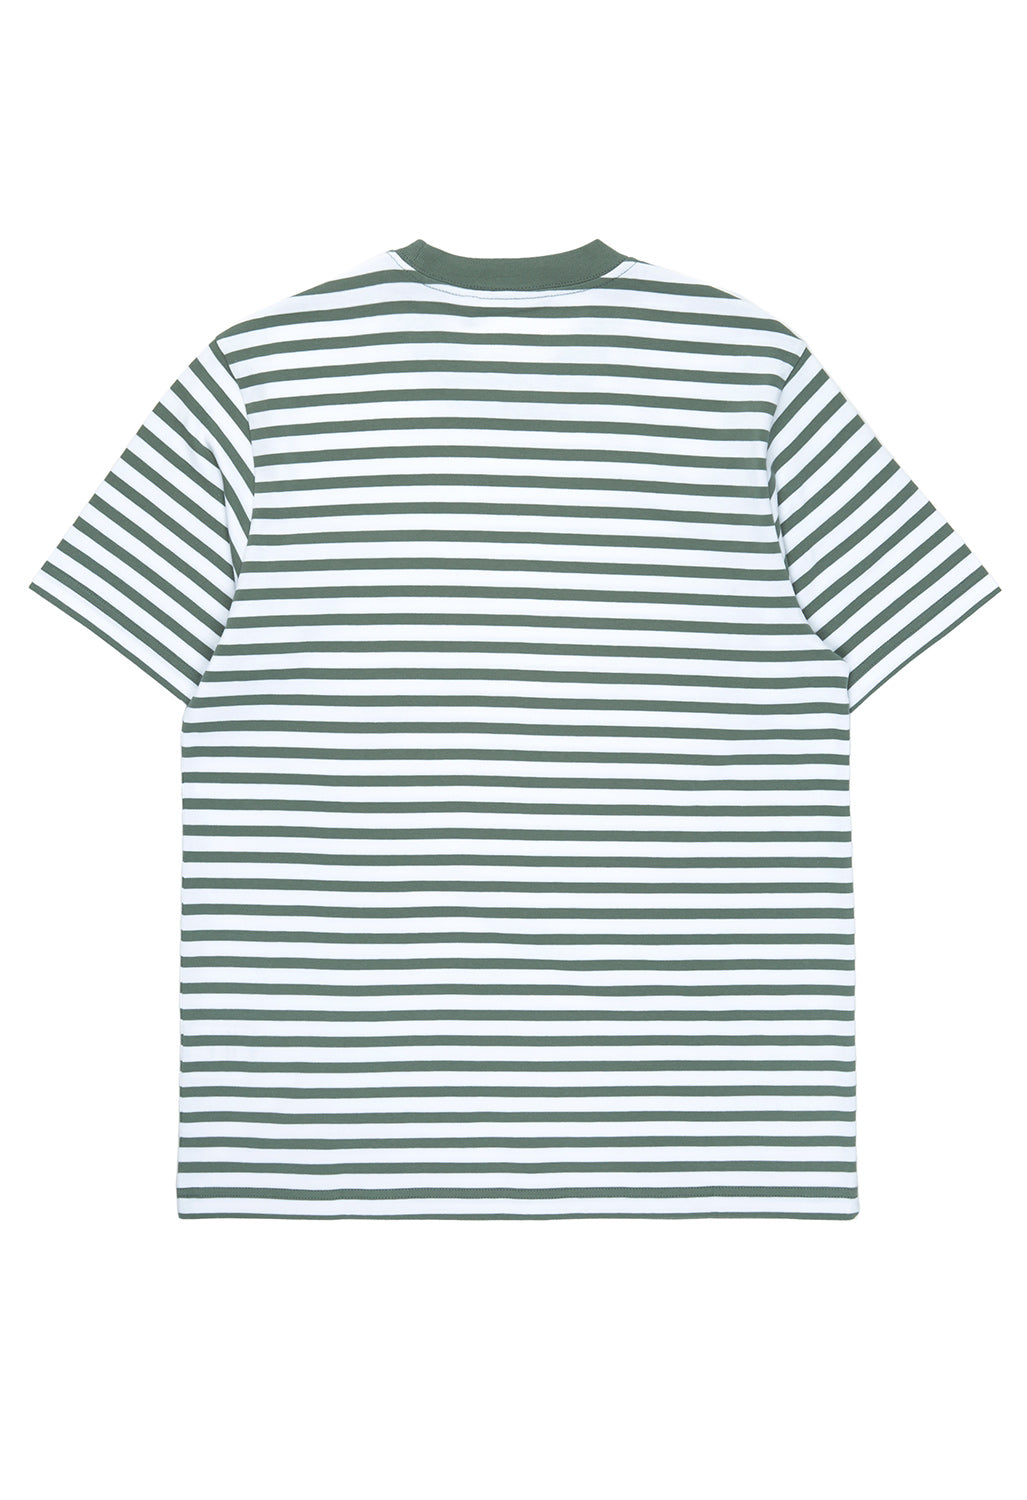 Carhartt WIP Men's Seidler Pocket T-Shirt - Seidler Stripe, Park / White